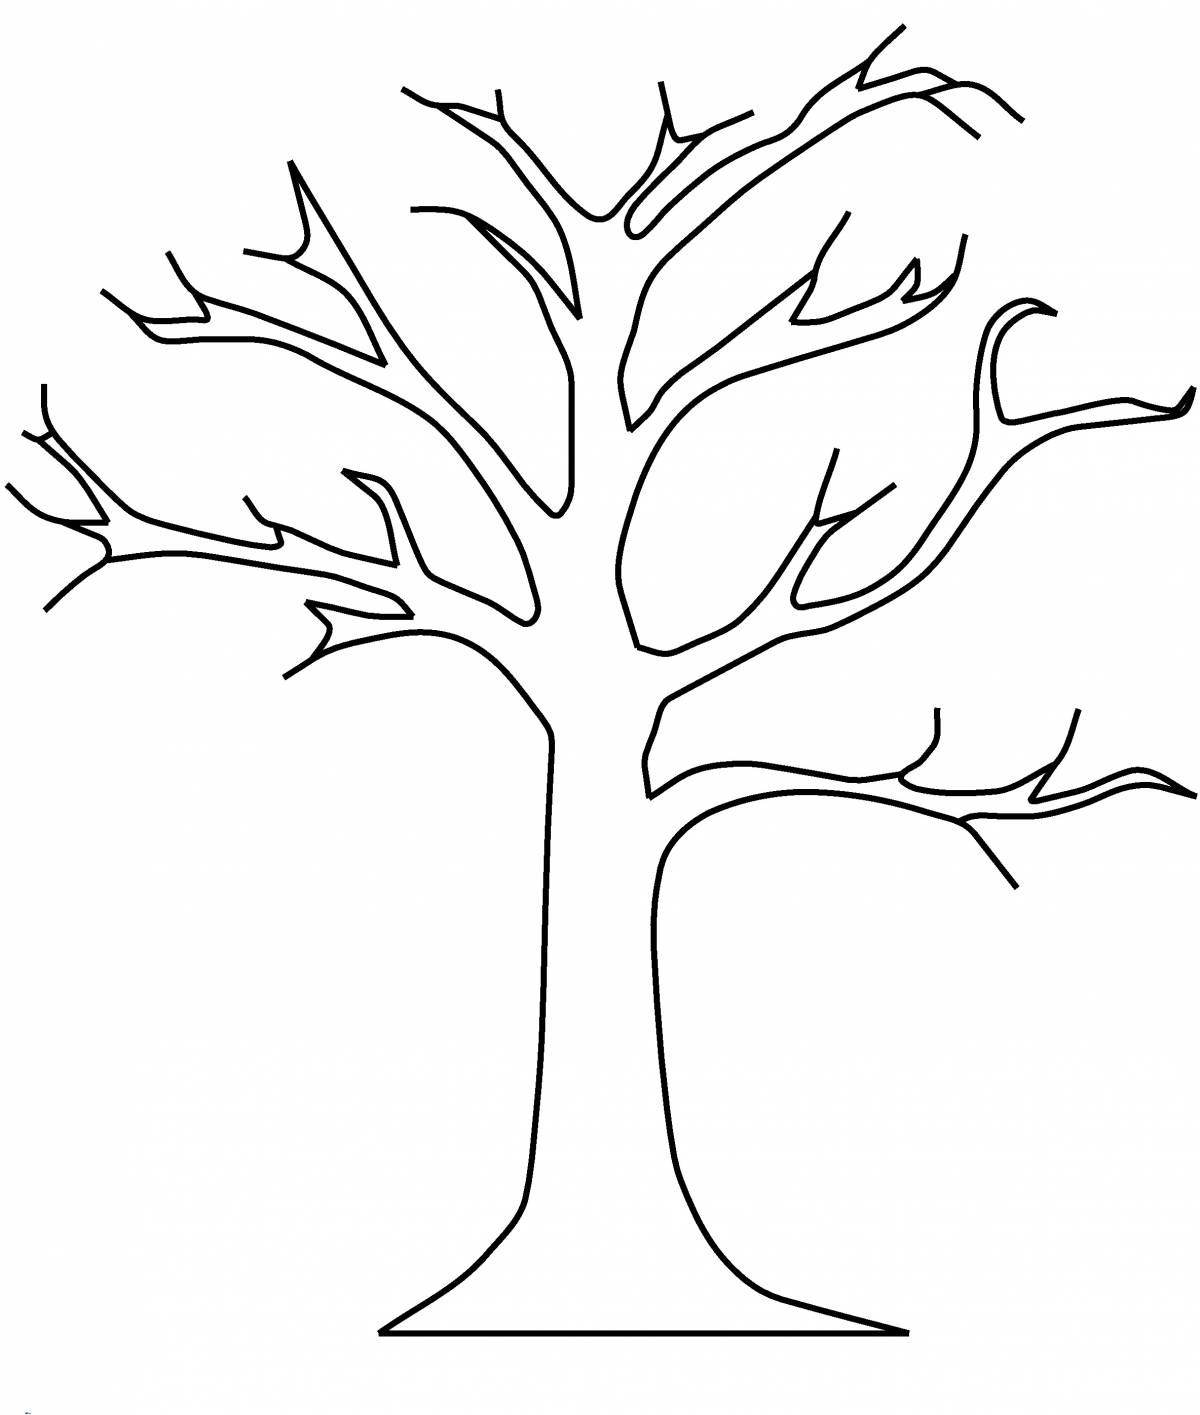 Живая страница раскраски зимнего дерева для детей 3-4 лет